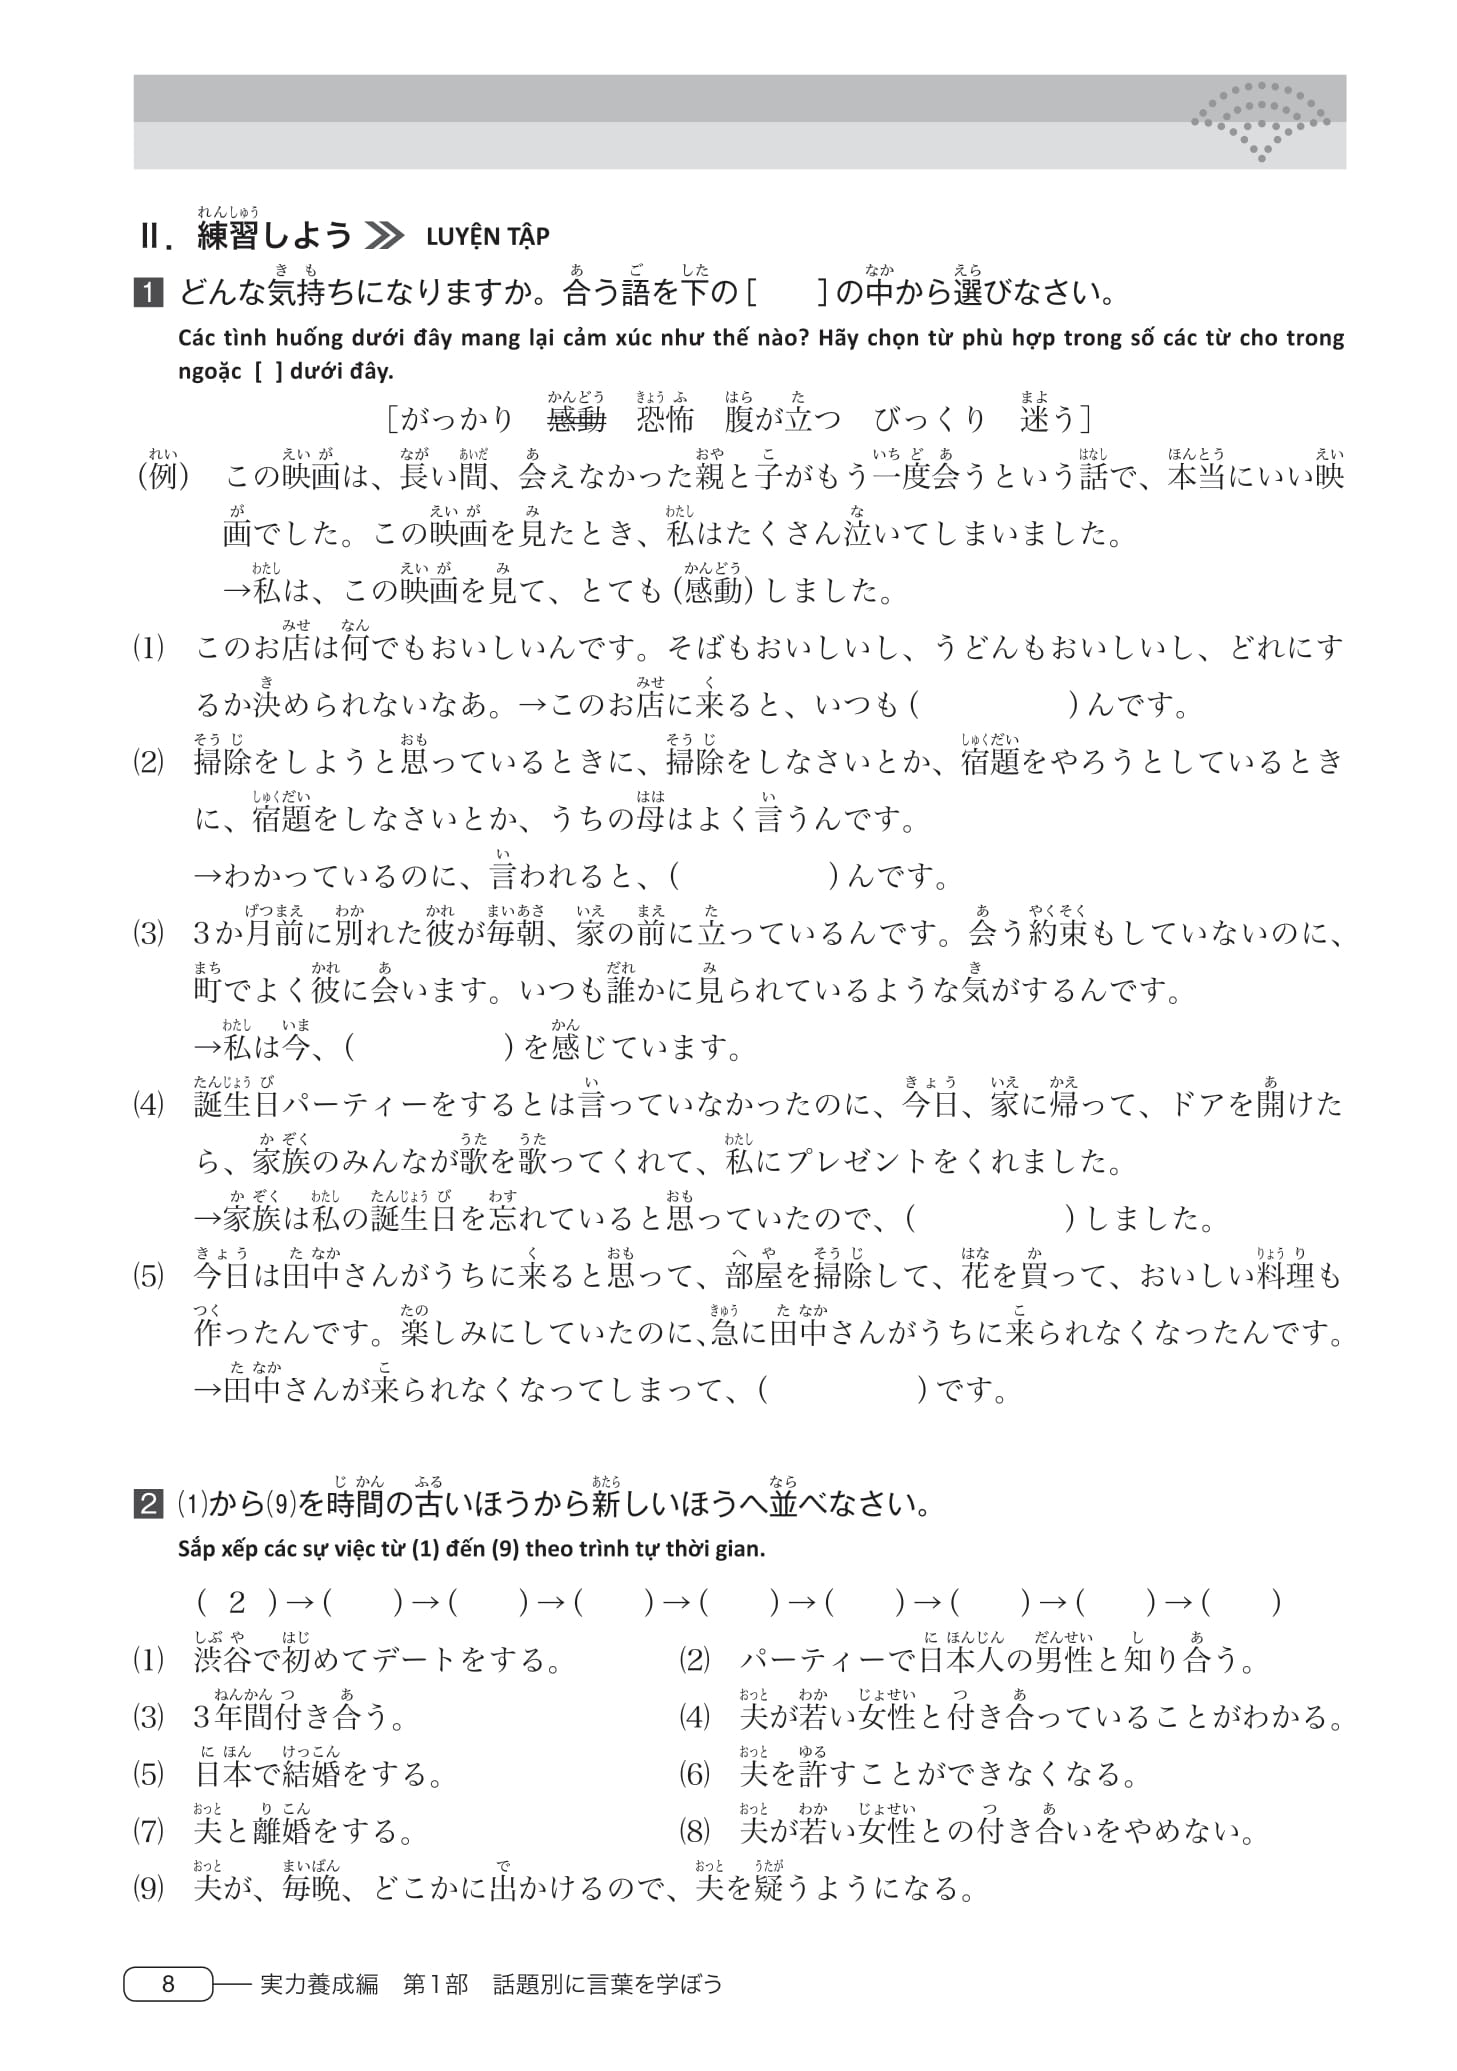 Tài Liệu Luyện Thi Năng Lực Tiếng Nhật - Từ Vựng N3 PDF